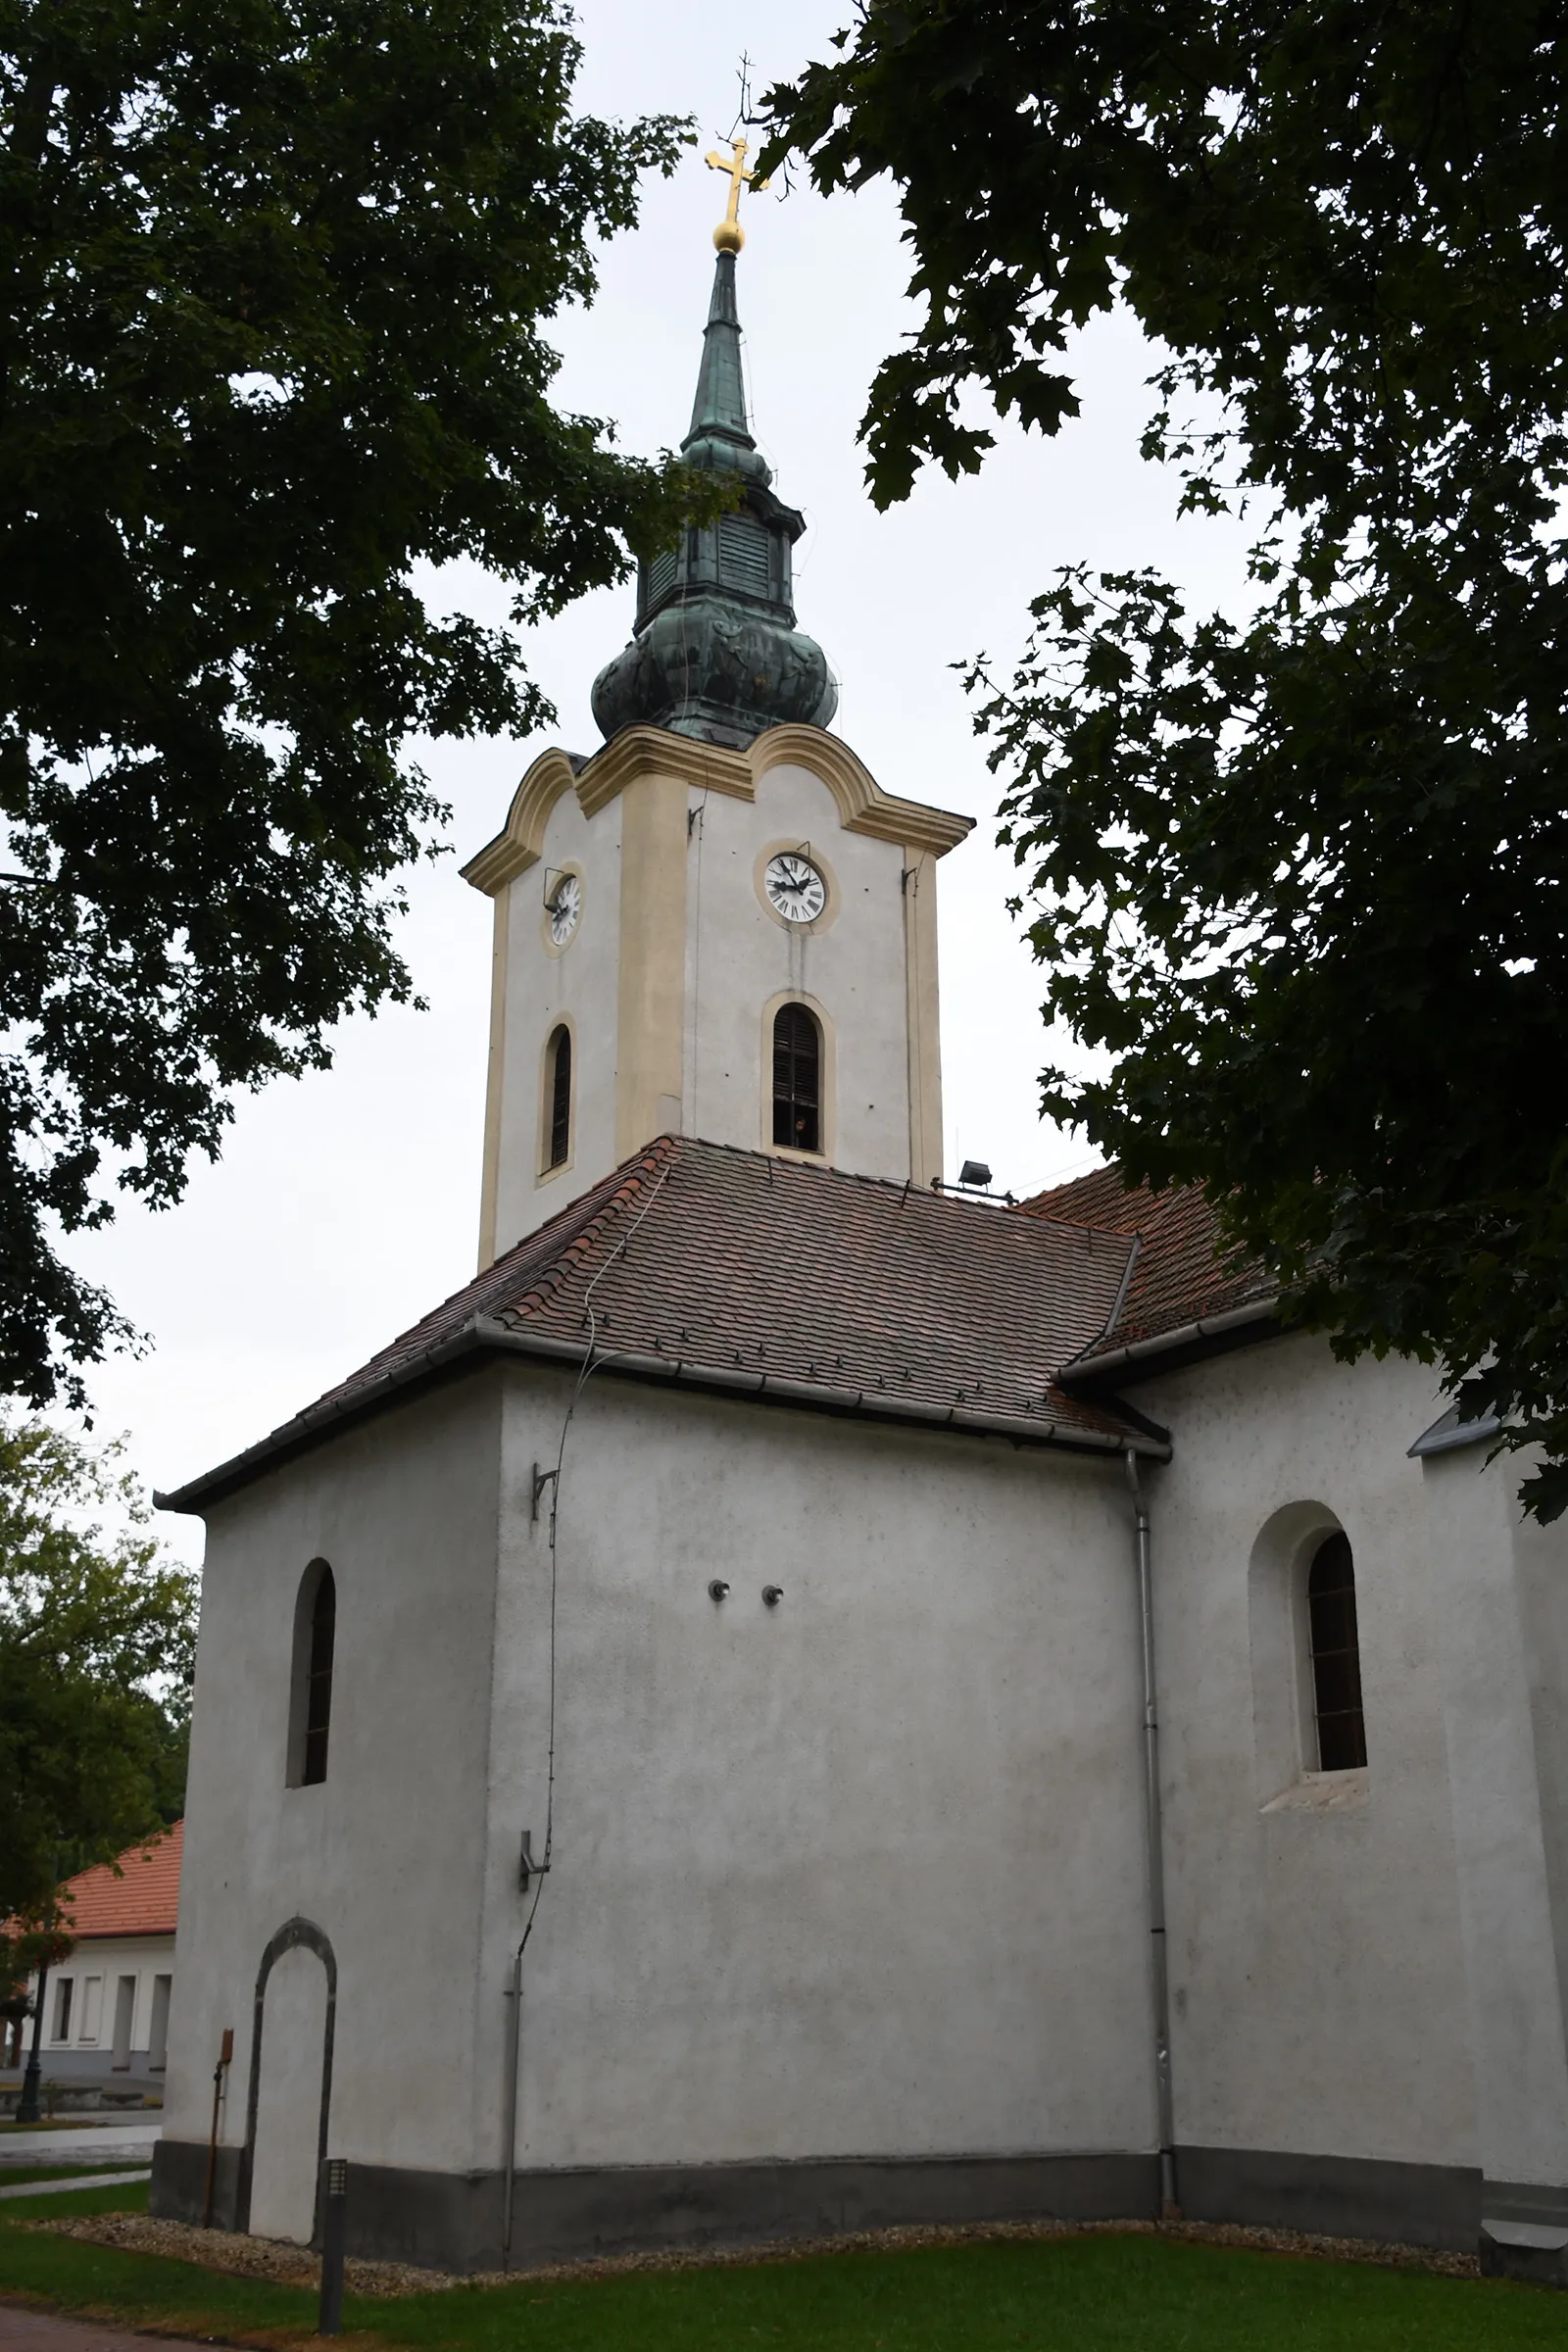 Photo showing: Roman Catholic church in Jászfényszaru, Hungary